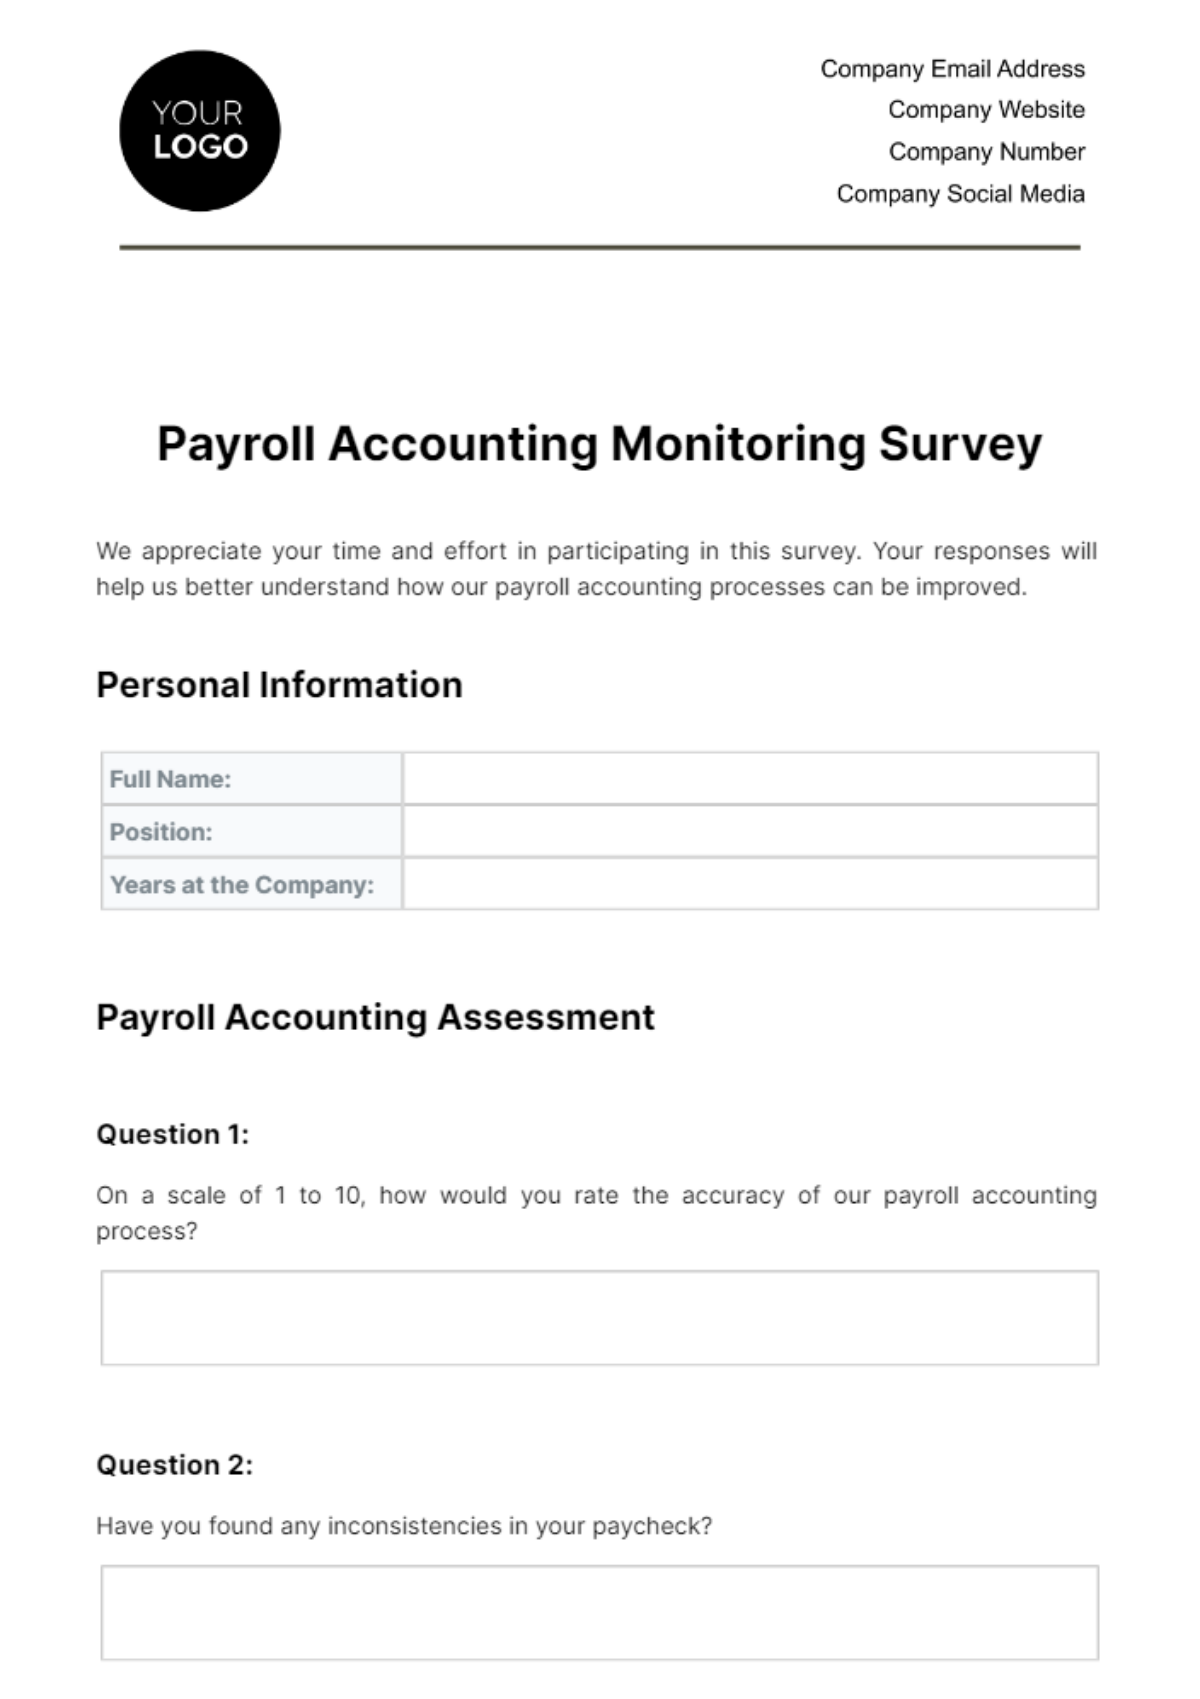 Payroll Accounting Monitoring Survey Template